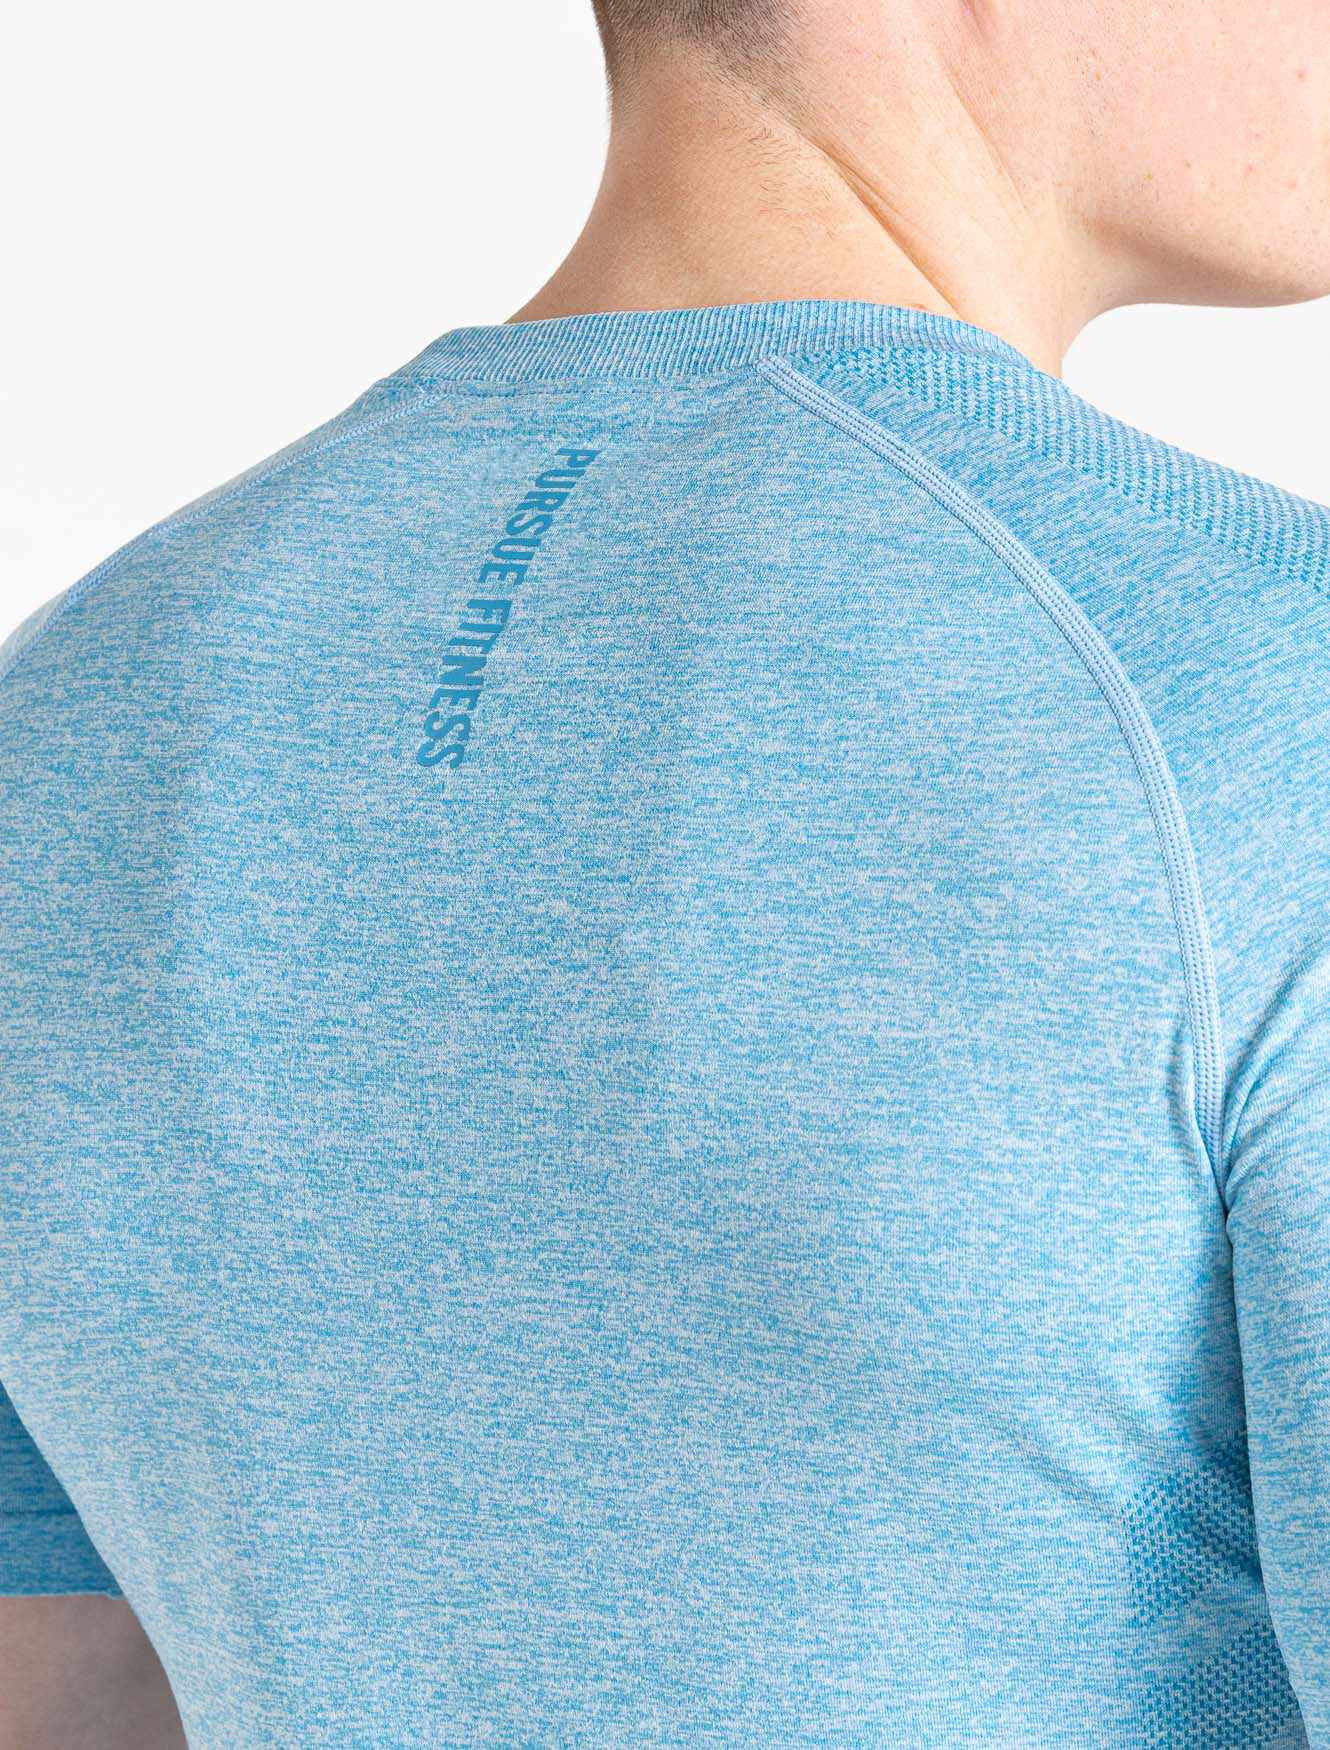 Intensity Seamless T-Shirt - Blue Marl